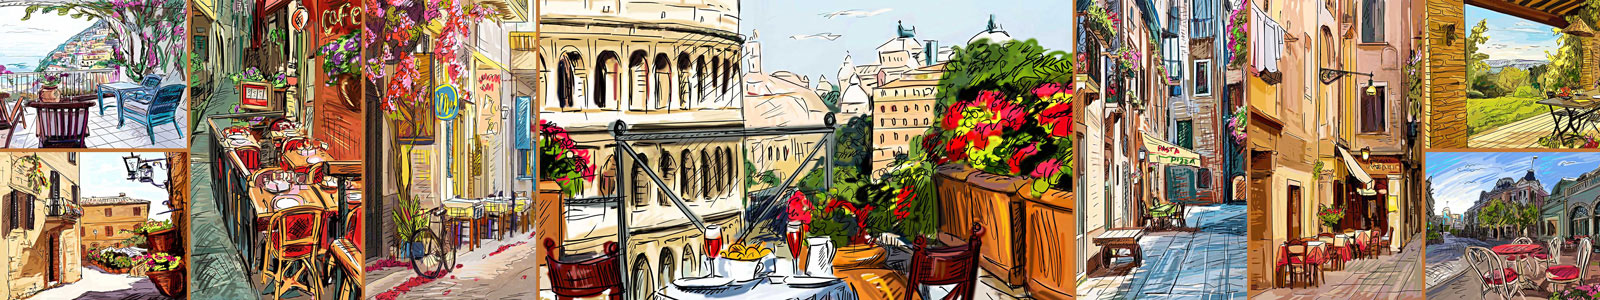 №4956 - Улицы Рима и других городов Италии в иллюстрациях, коллаж